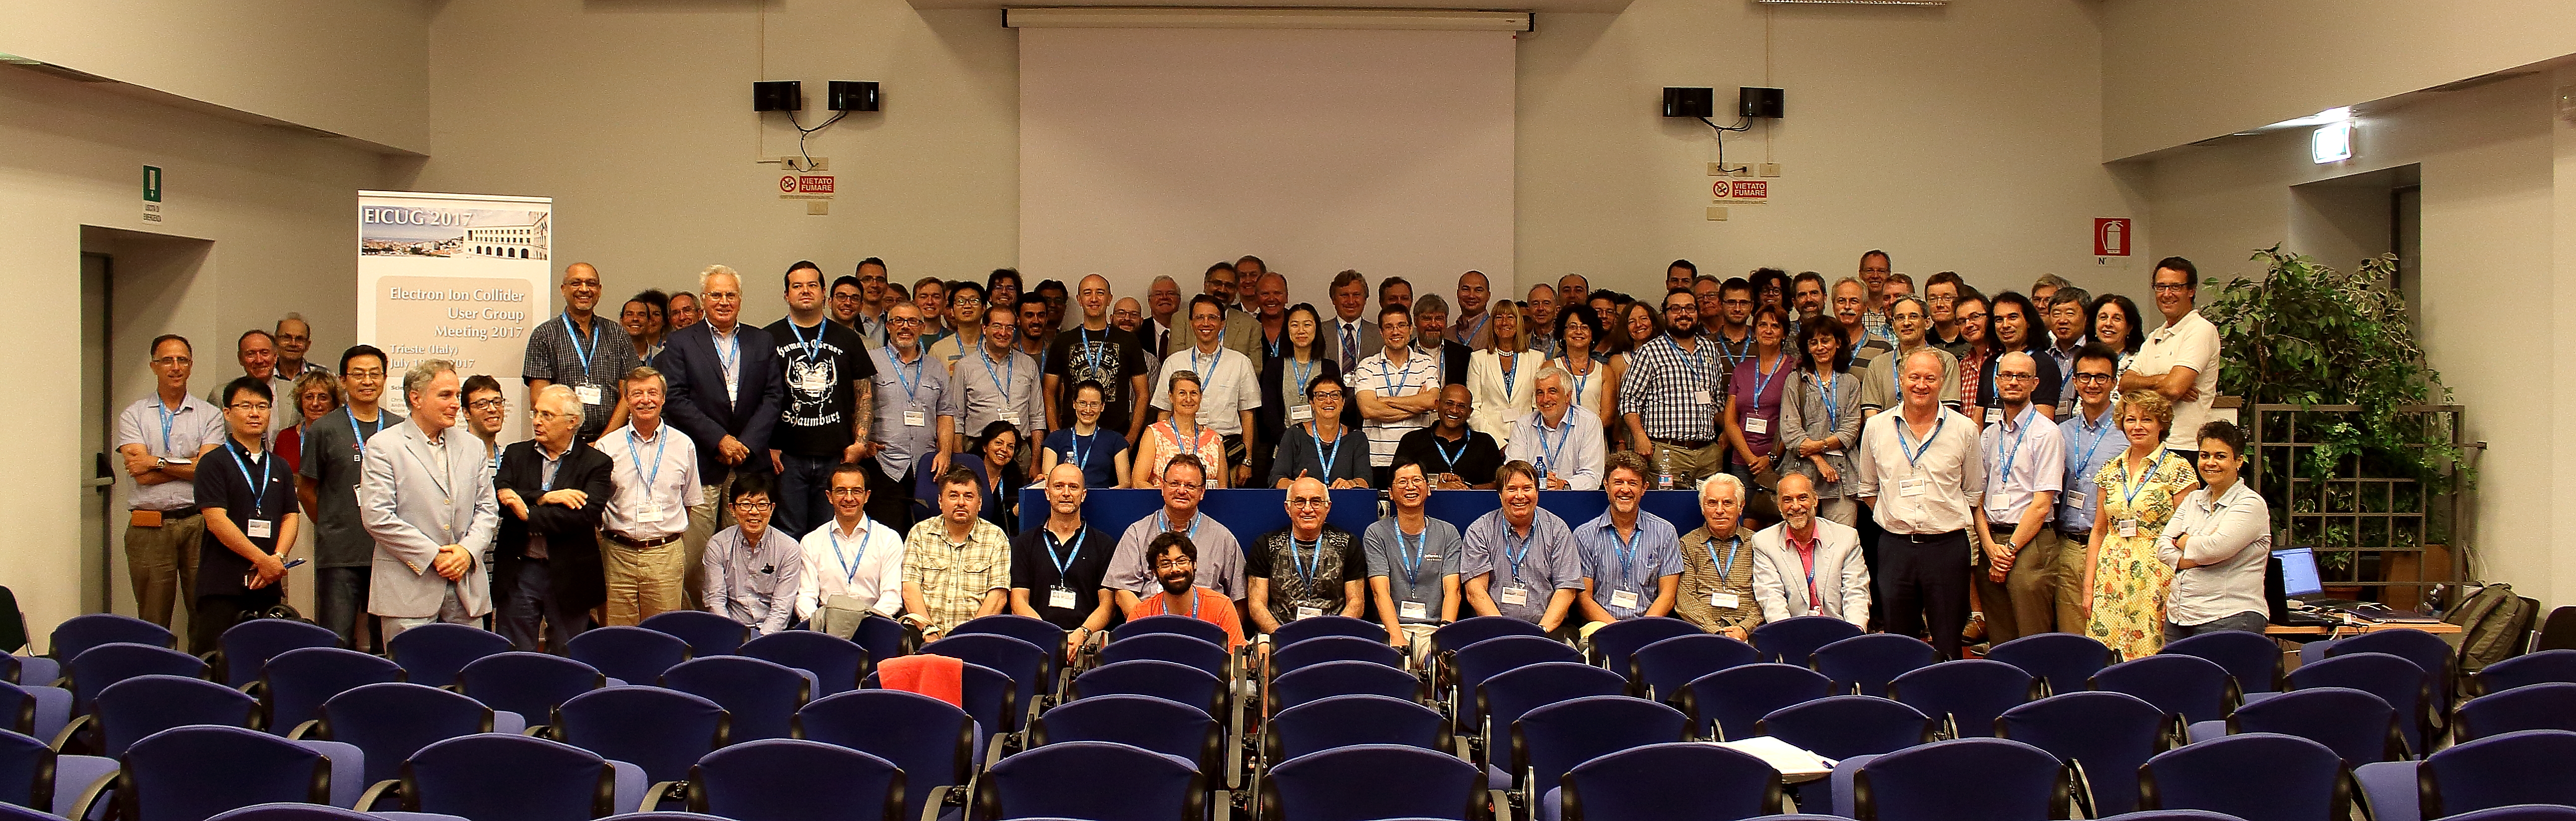 EICUG 2017 - Meeting Trieste 18-22 July